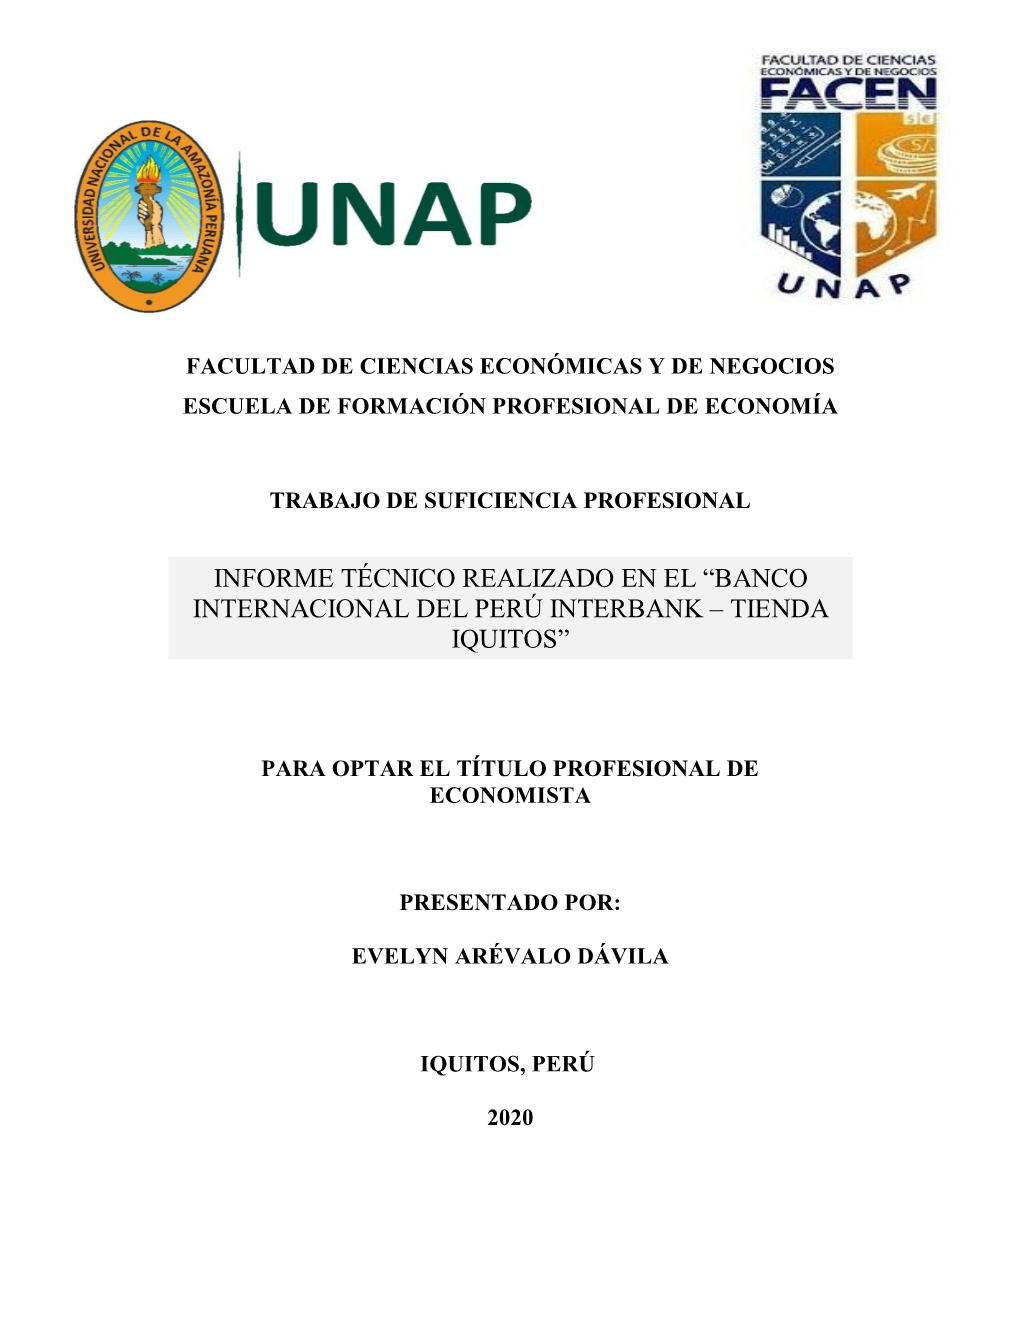 Informe Técnico Realizado En El “Banco Internacional Del Perú Interbank – Tienda Iquitos”